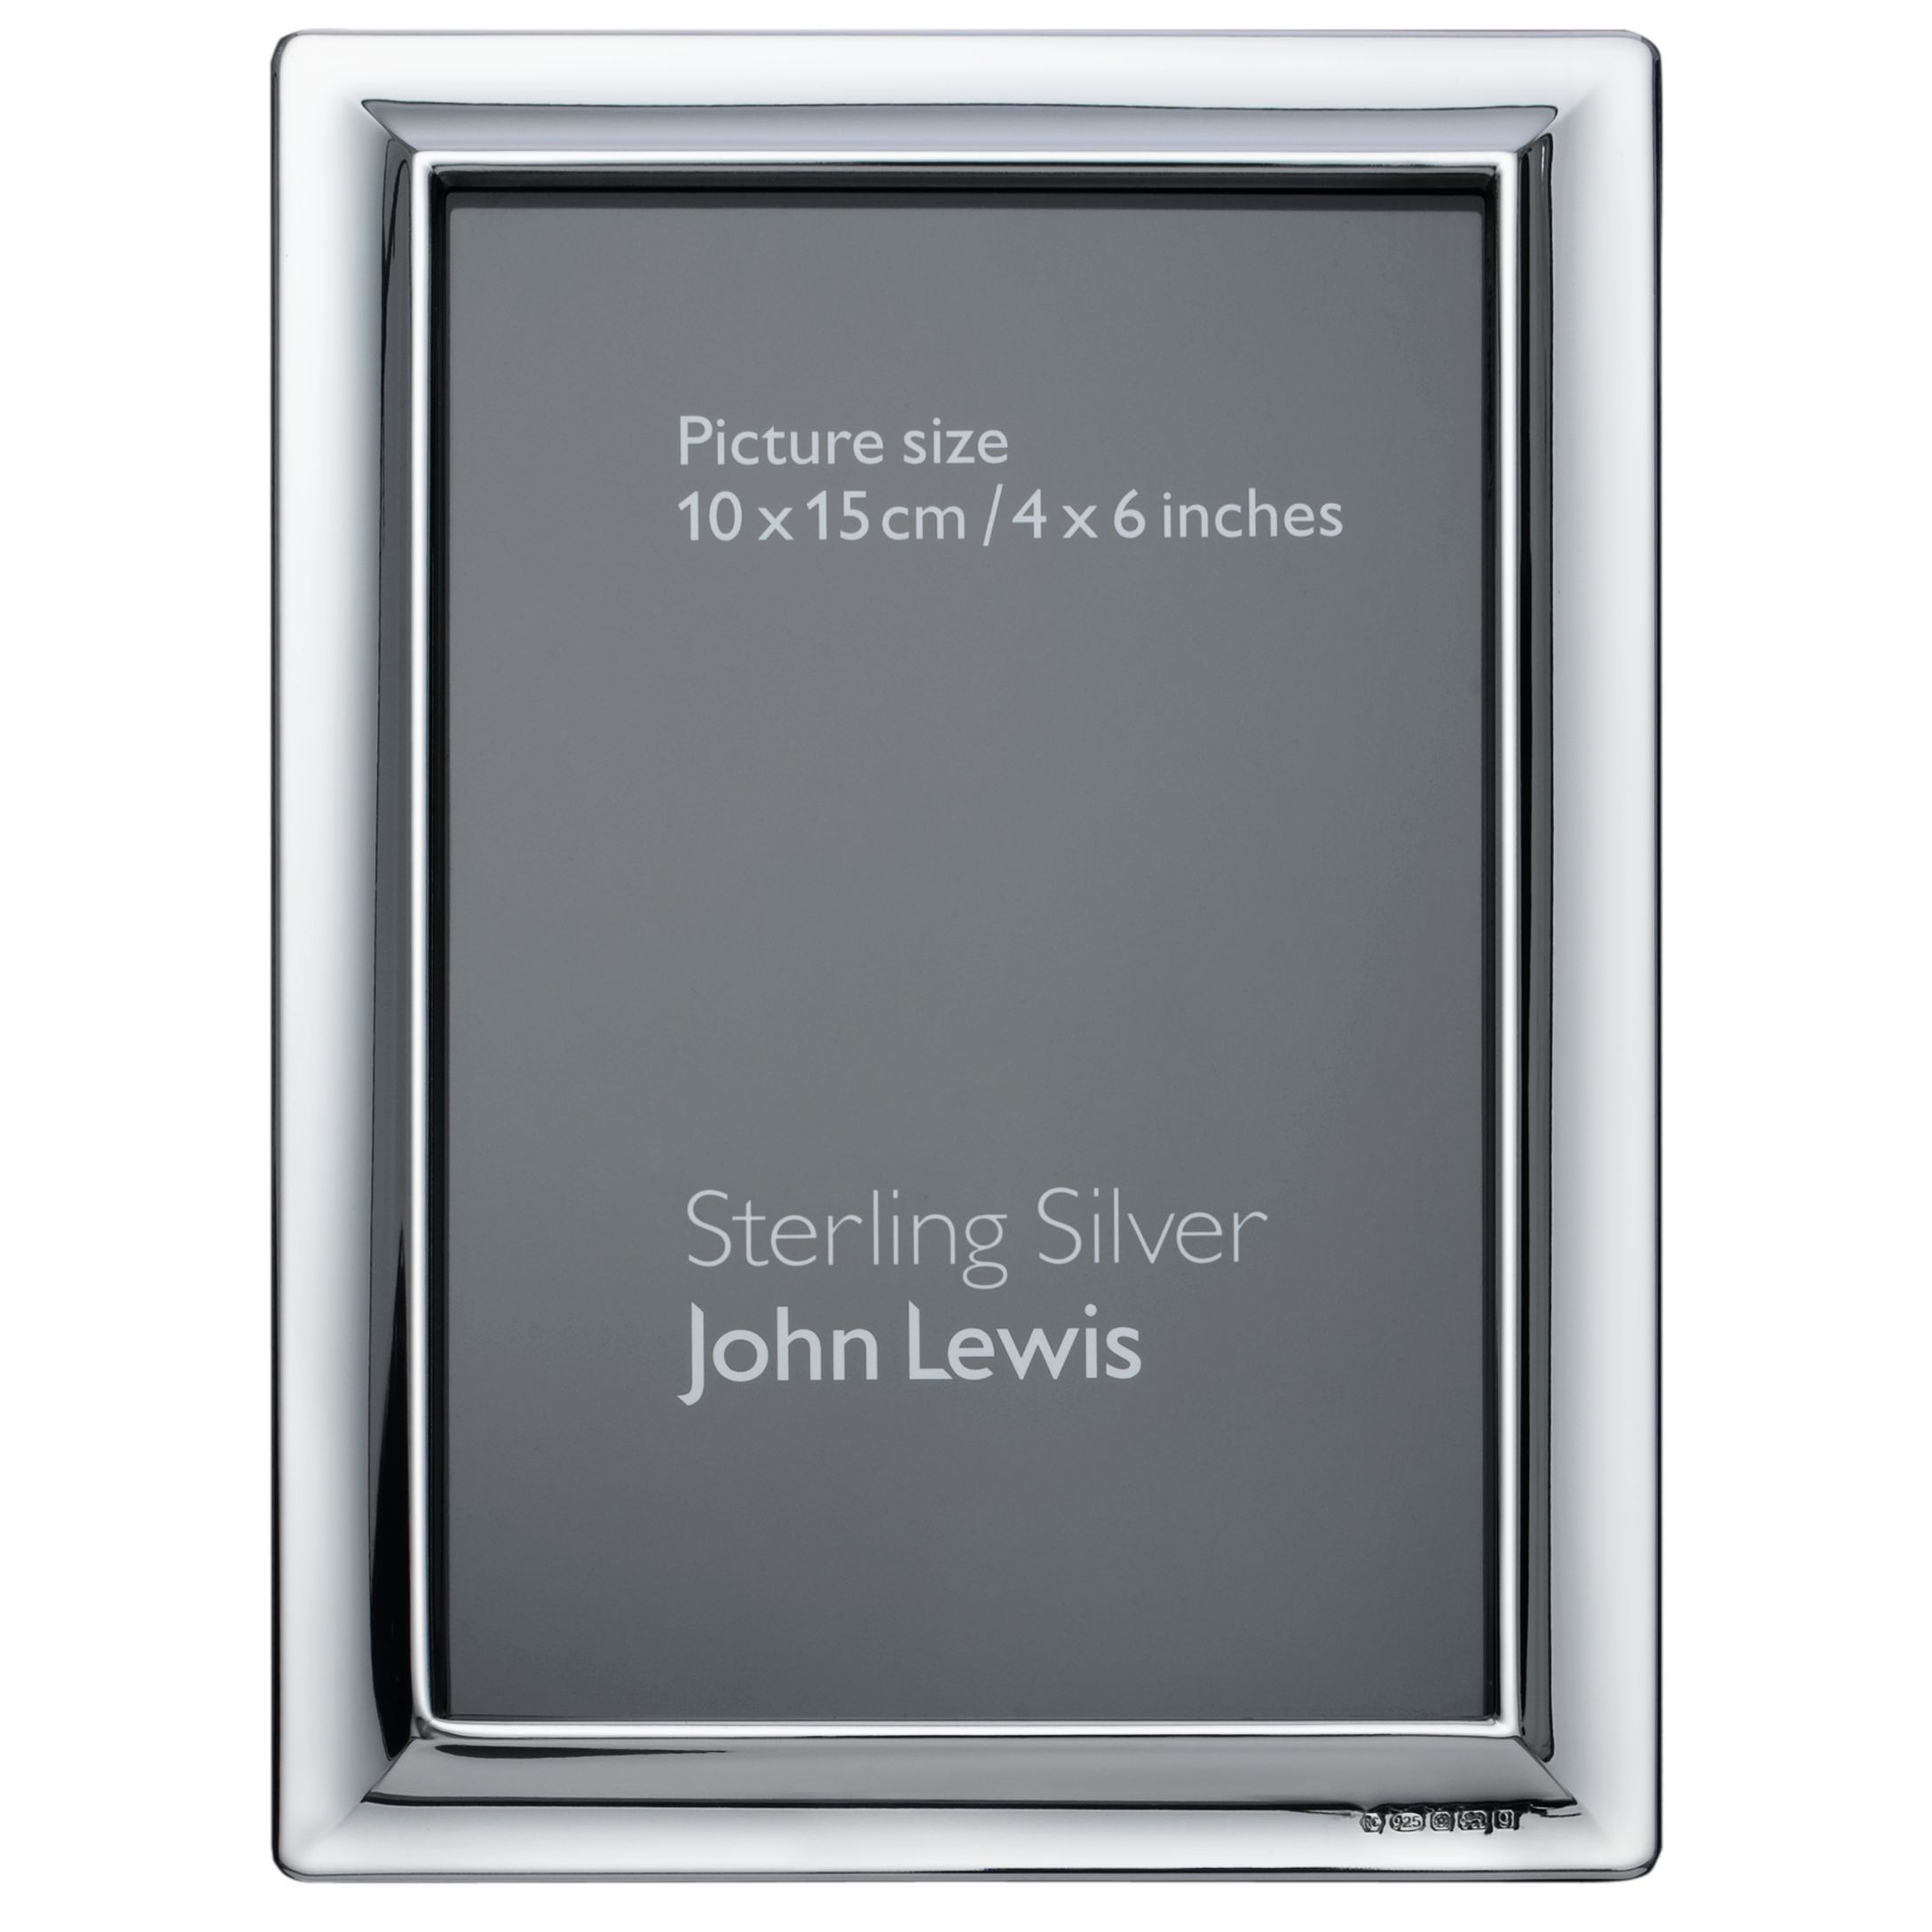 John Lewis Alexander Sterling Silver Frames